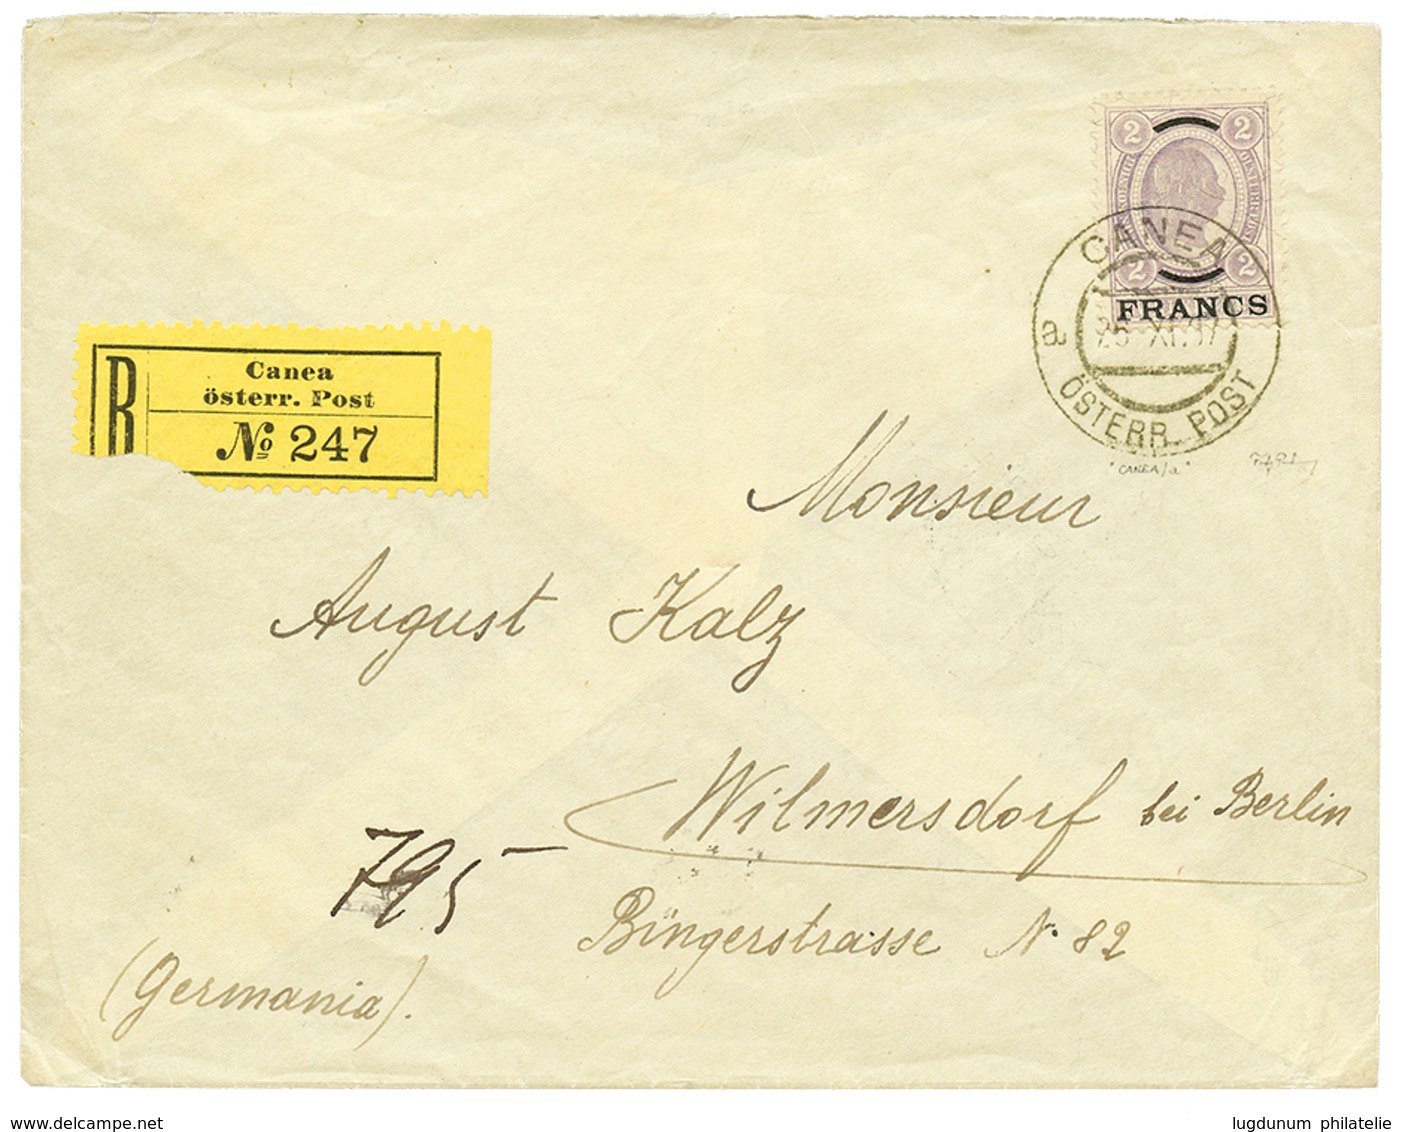 473 "CANEA " : 1907 2 FRANCS Violet Canc. CANEA On REGISTERED Envelope To GERMANY. Superb. - Levante-Marken